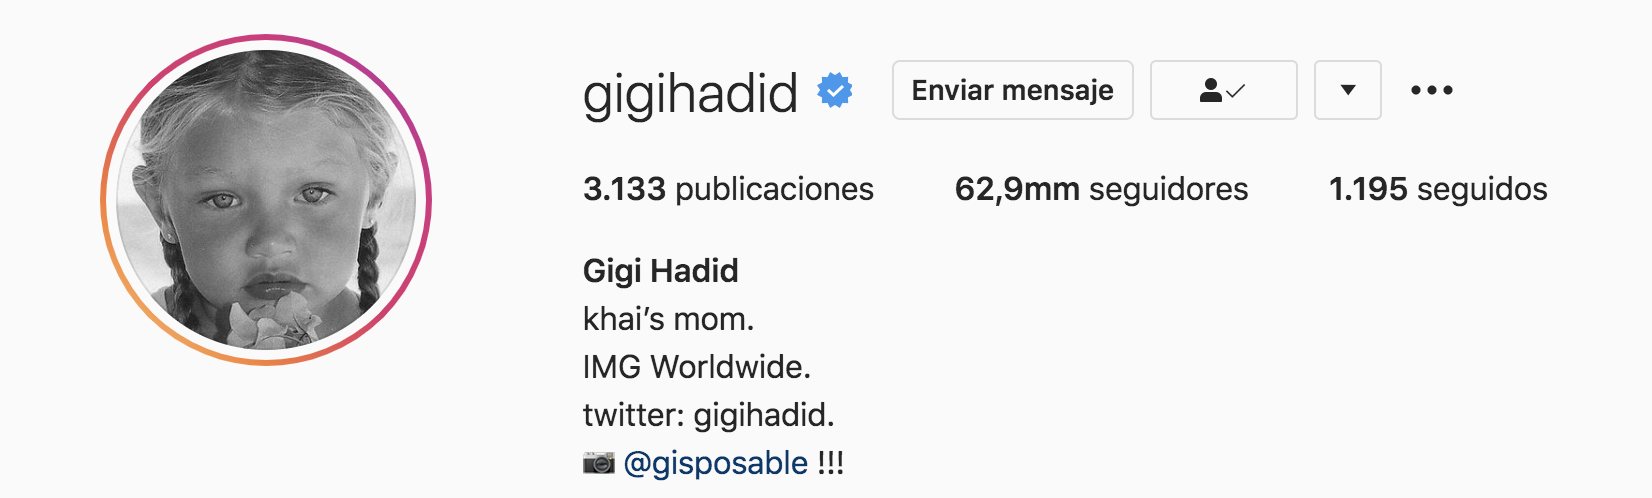 Gigi Hadid hizo público el nombre de su hija a través de su biografía de Instagram